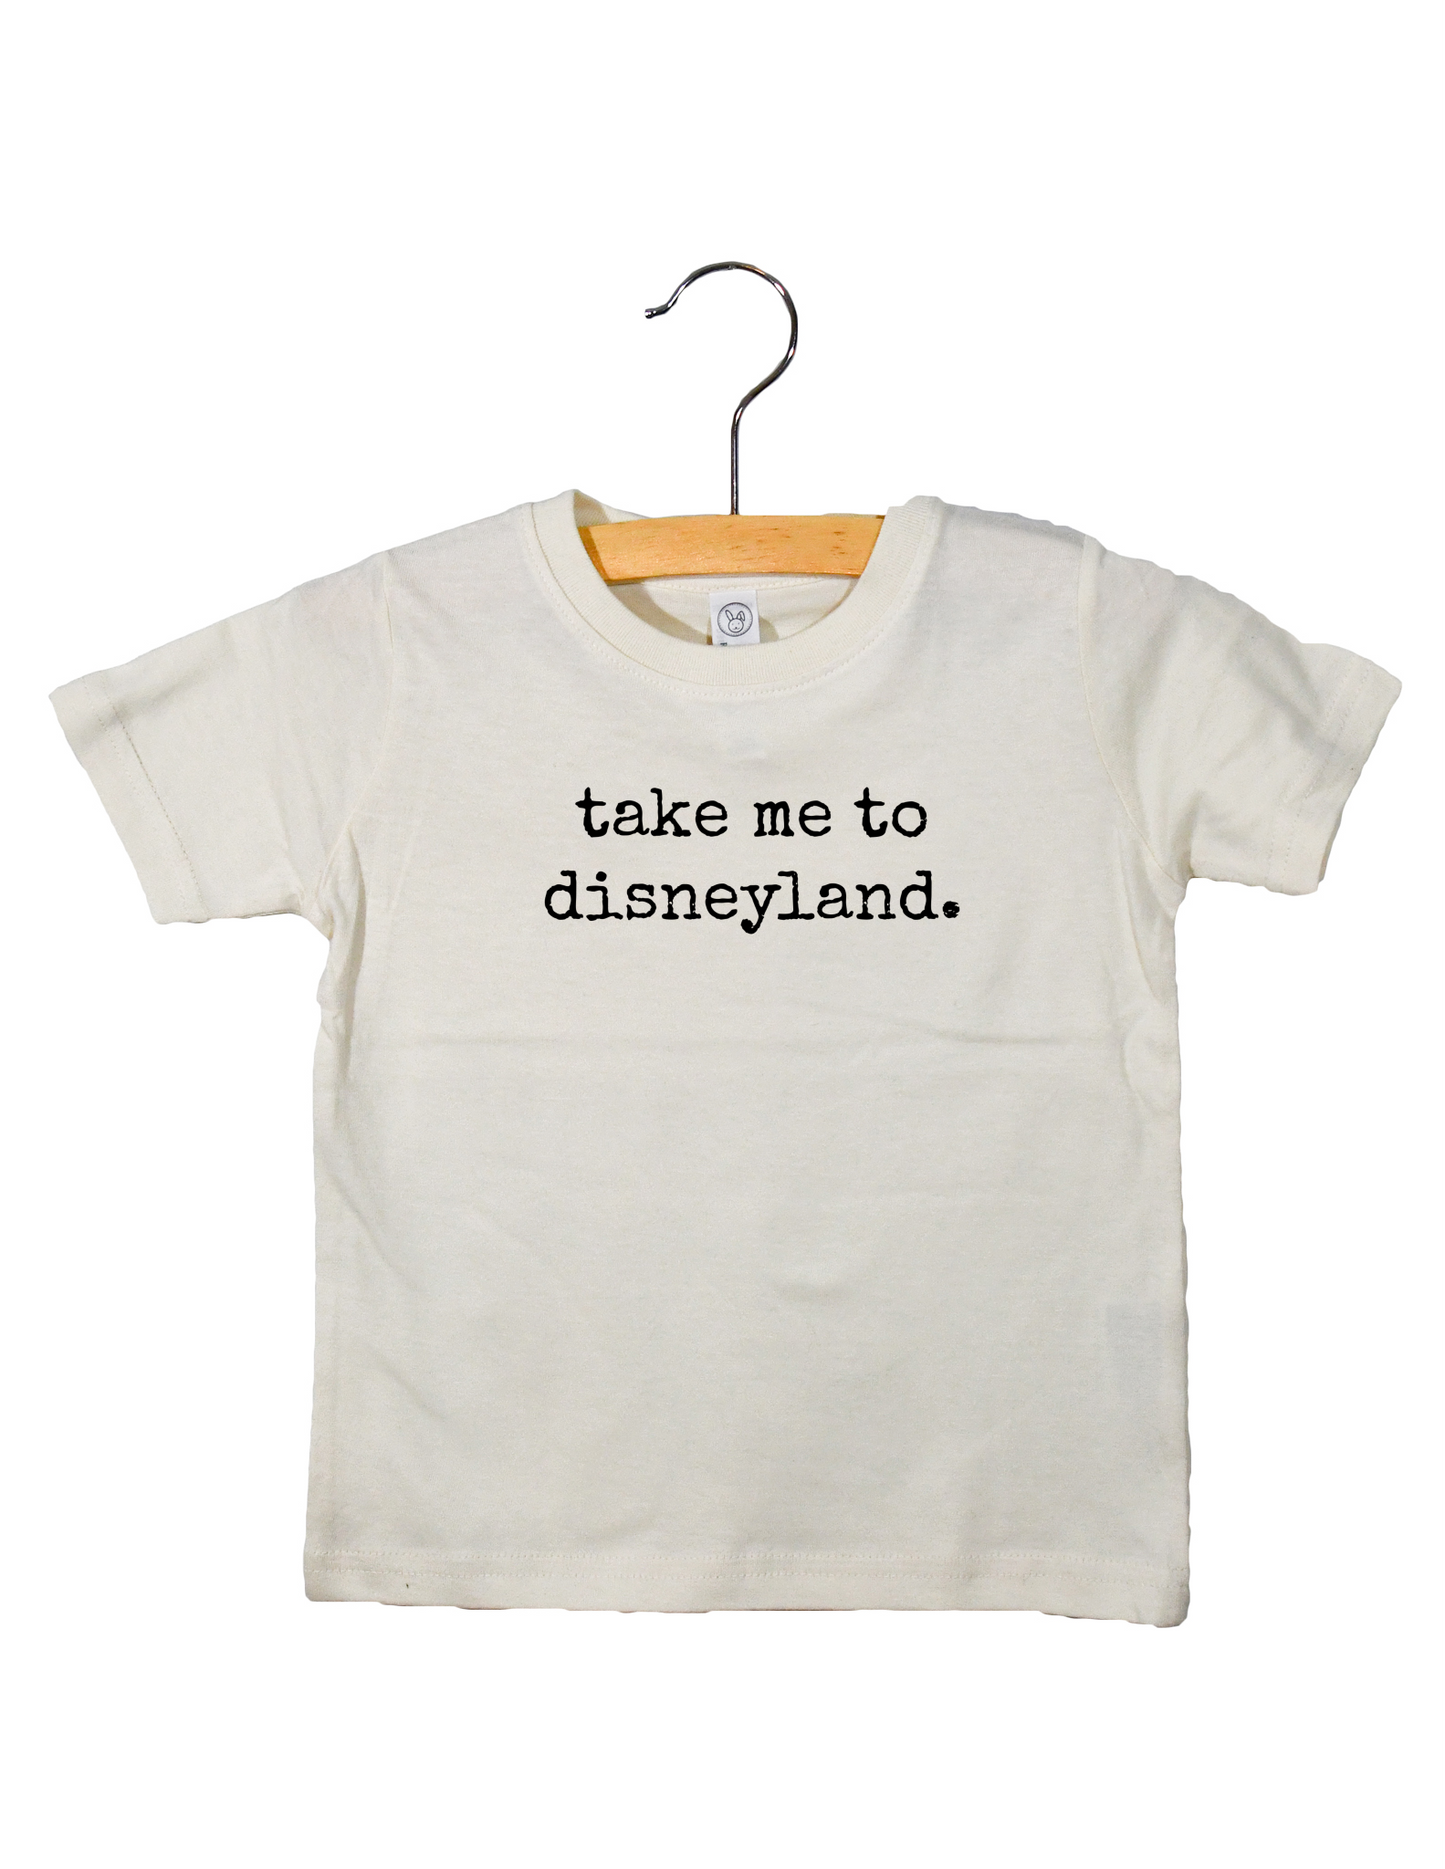 Take me to Disneyland - Toddler Tee